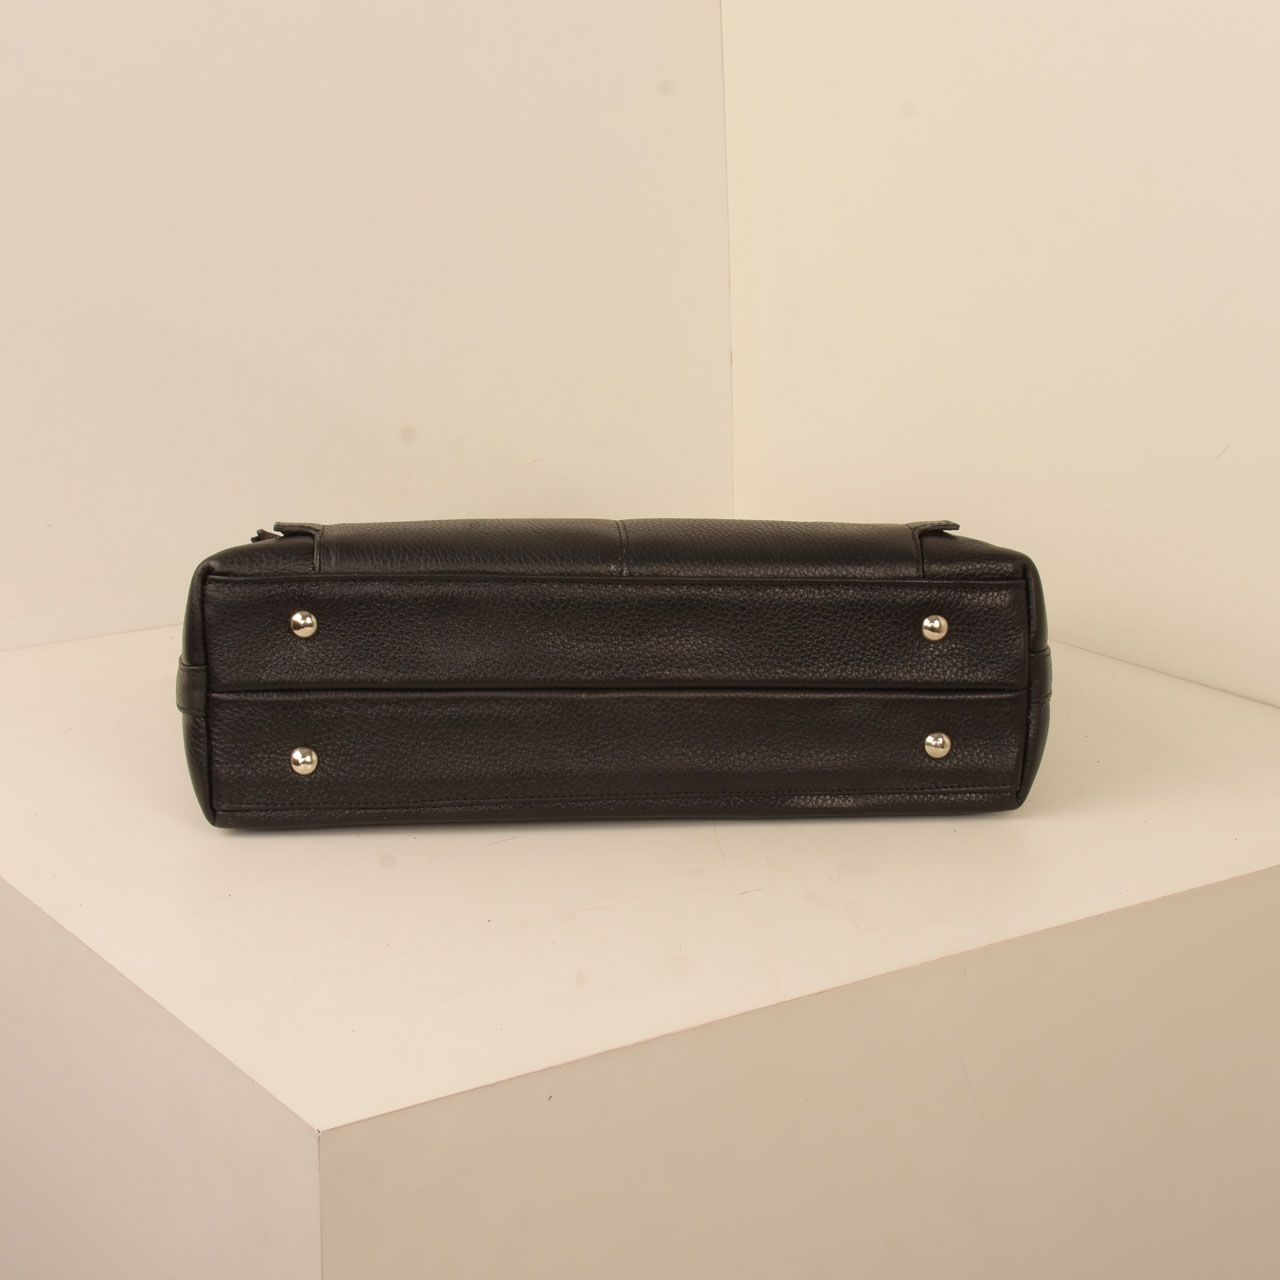  کیف دوشی زنانه پارینه چرم مدل V202-8 -  - 22